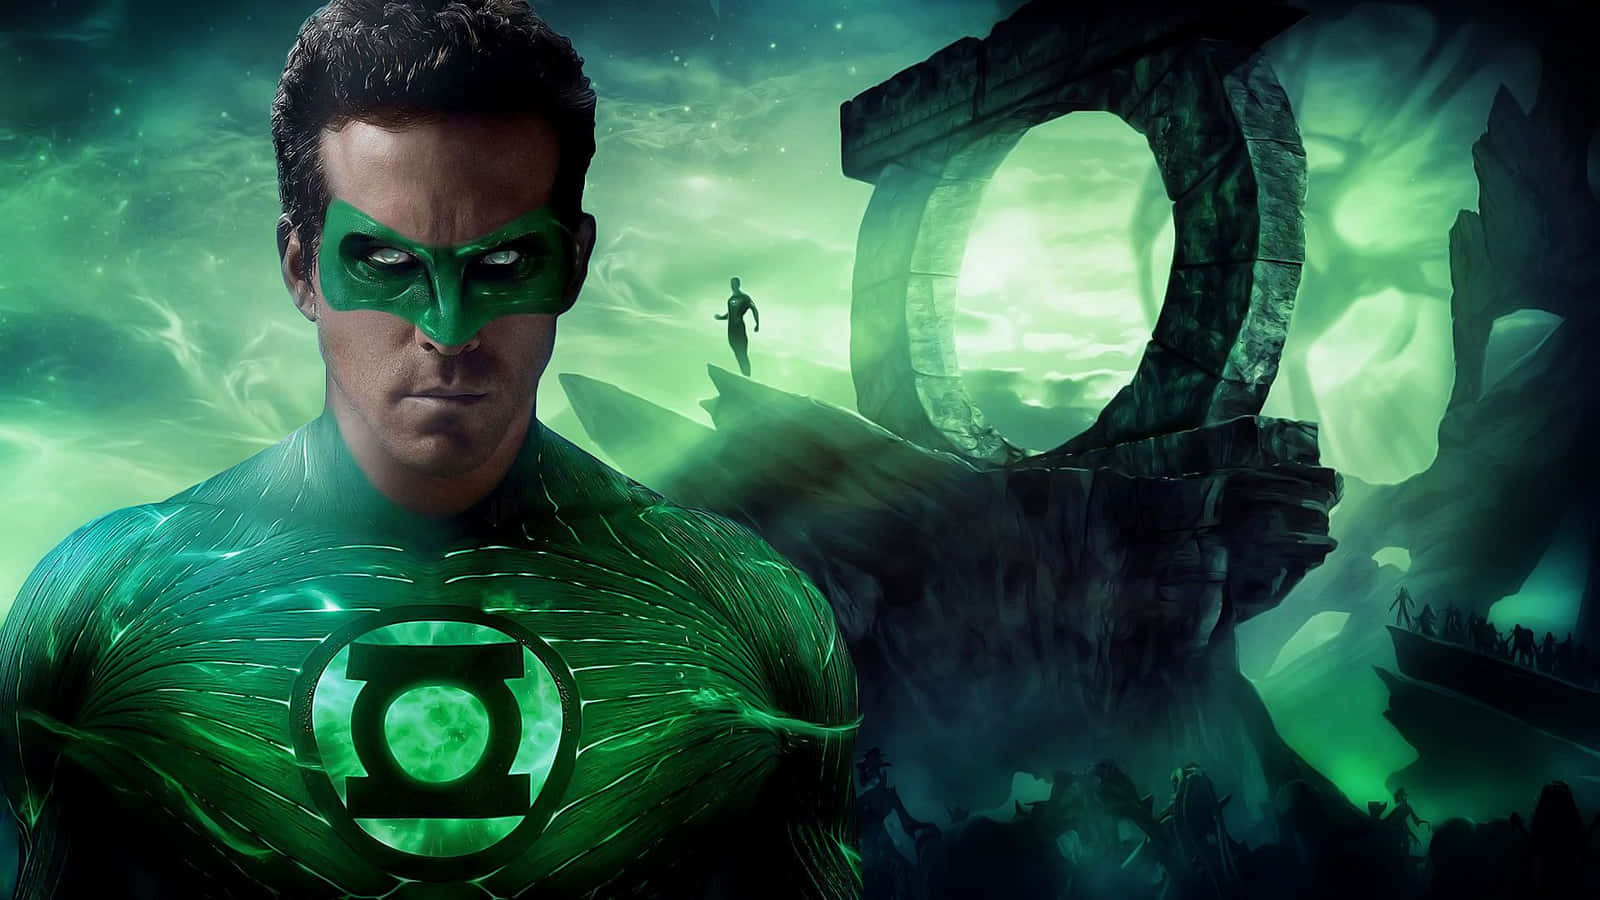 Hintergrundbildvon Green Lantern.